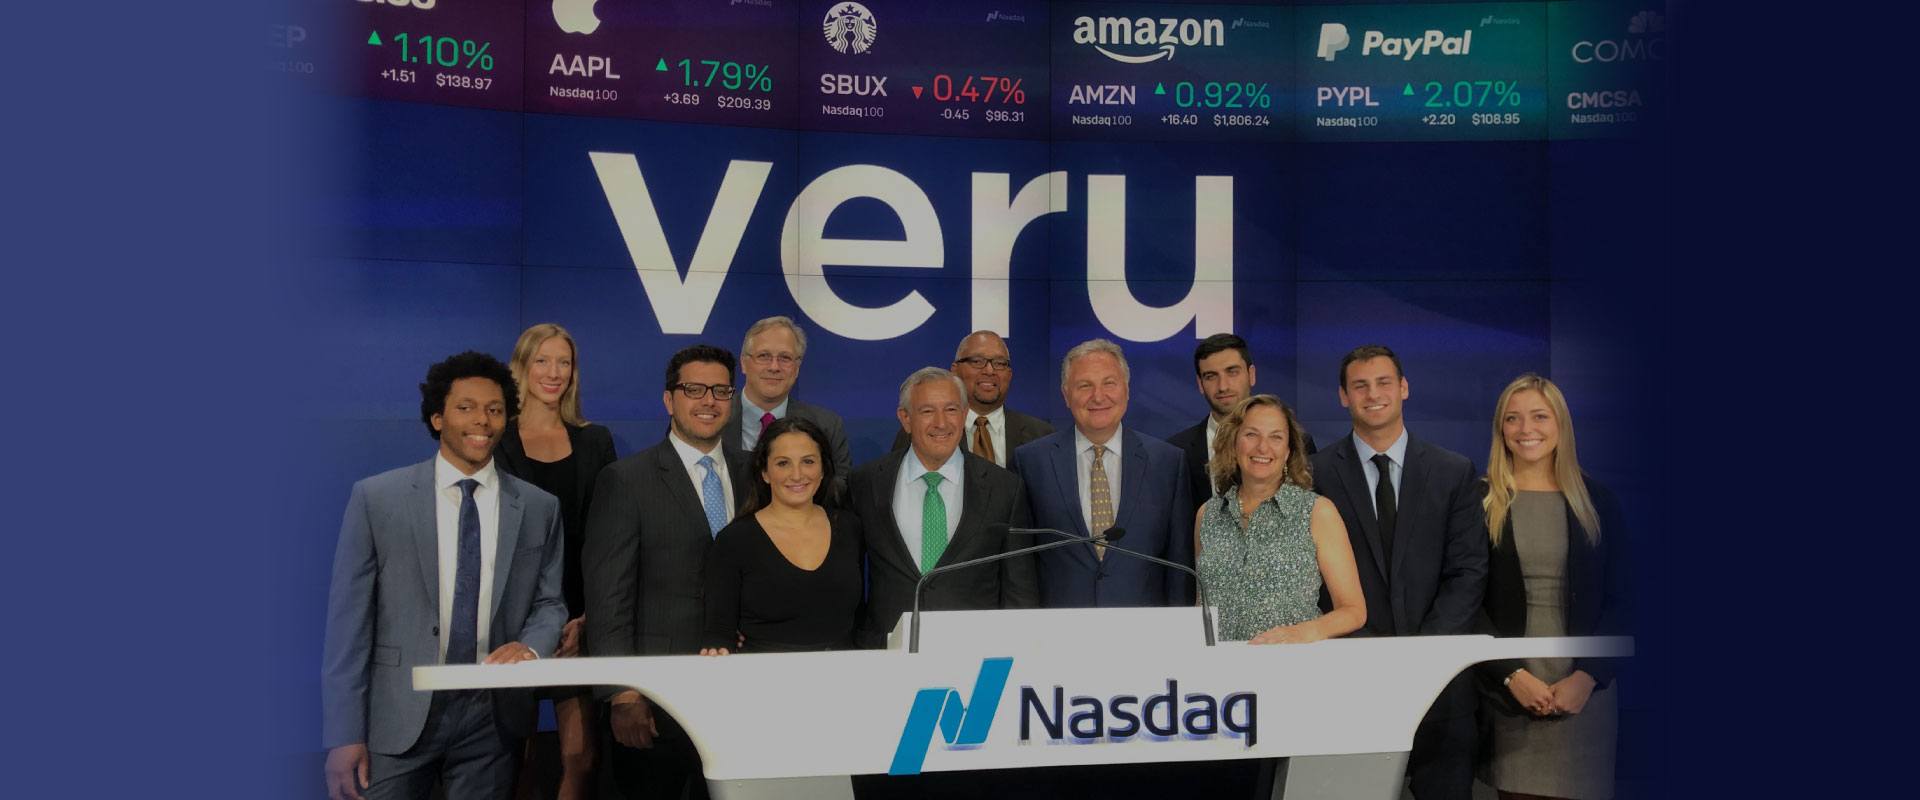 Veru Team at NASDAQ